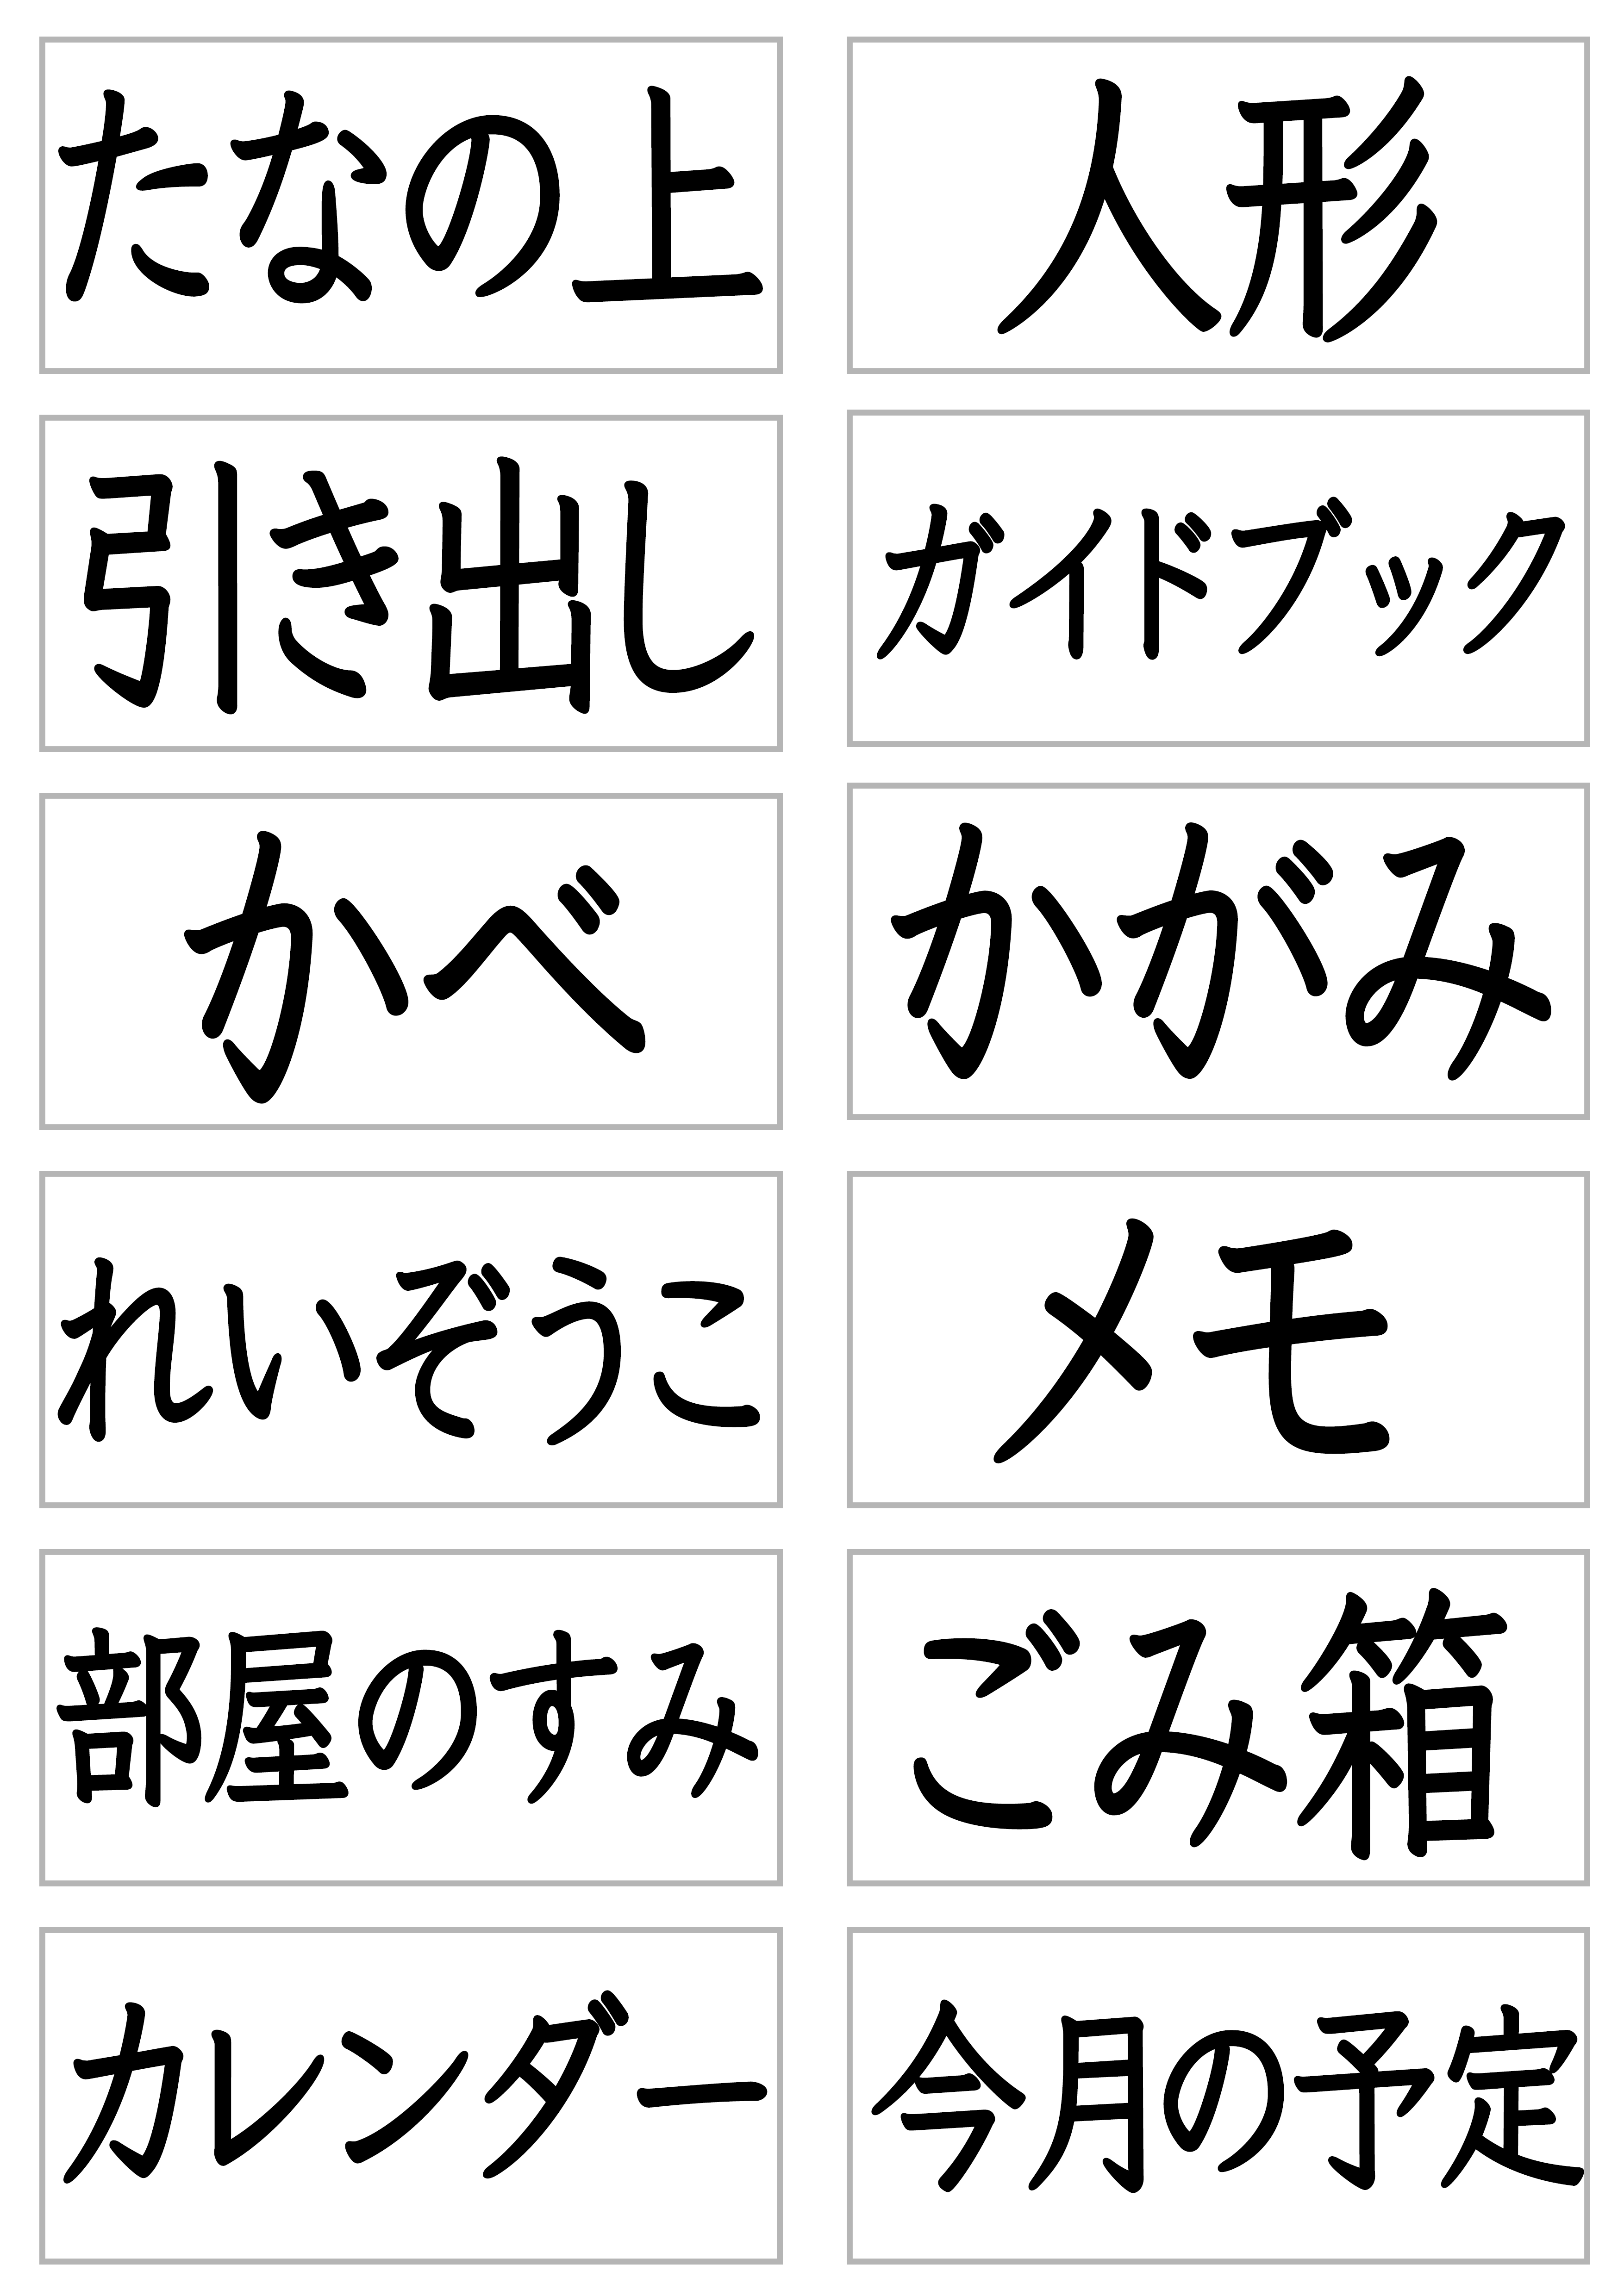 みんなの日本語30課